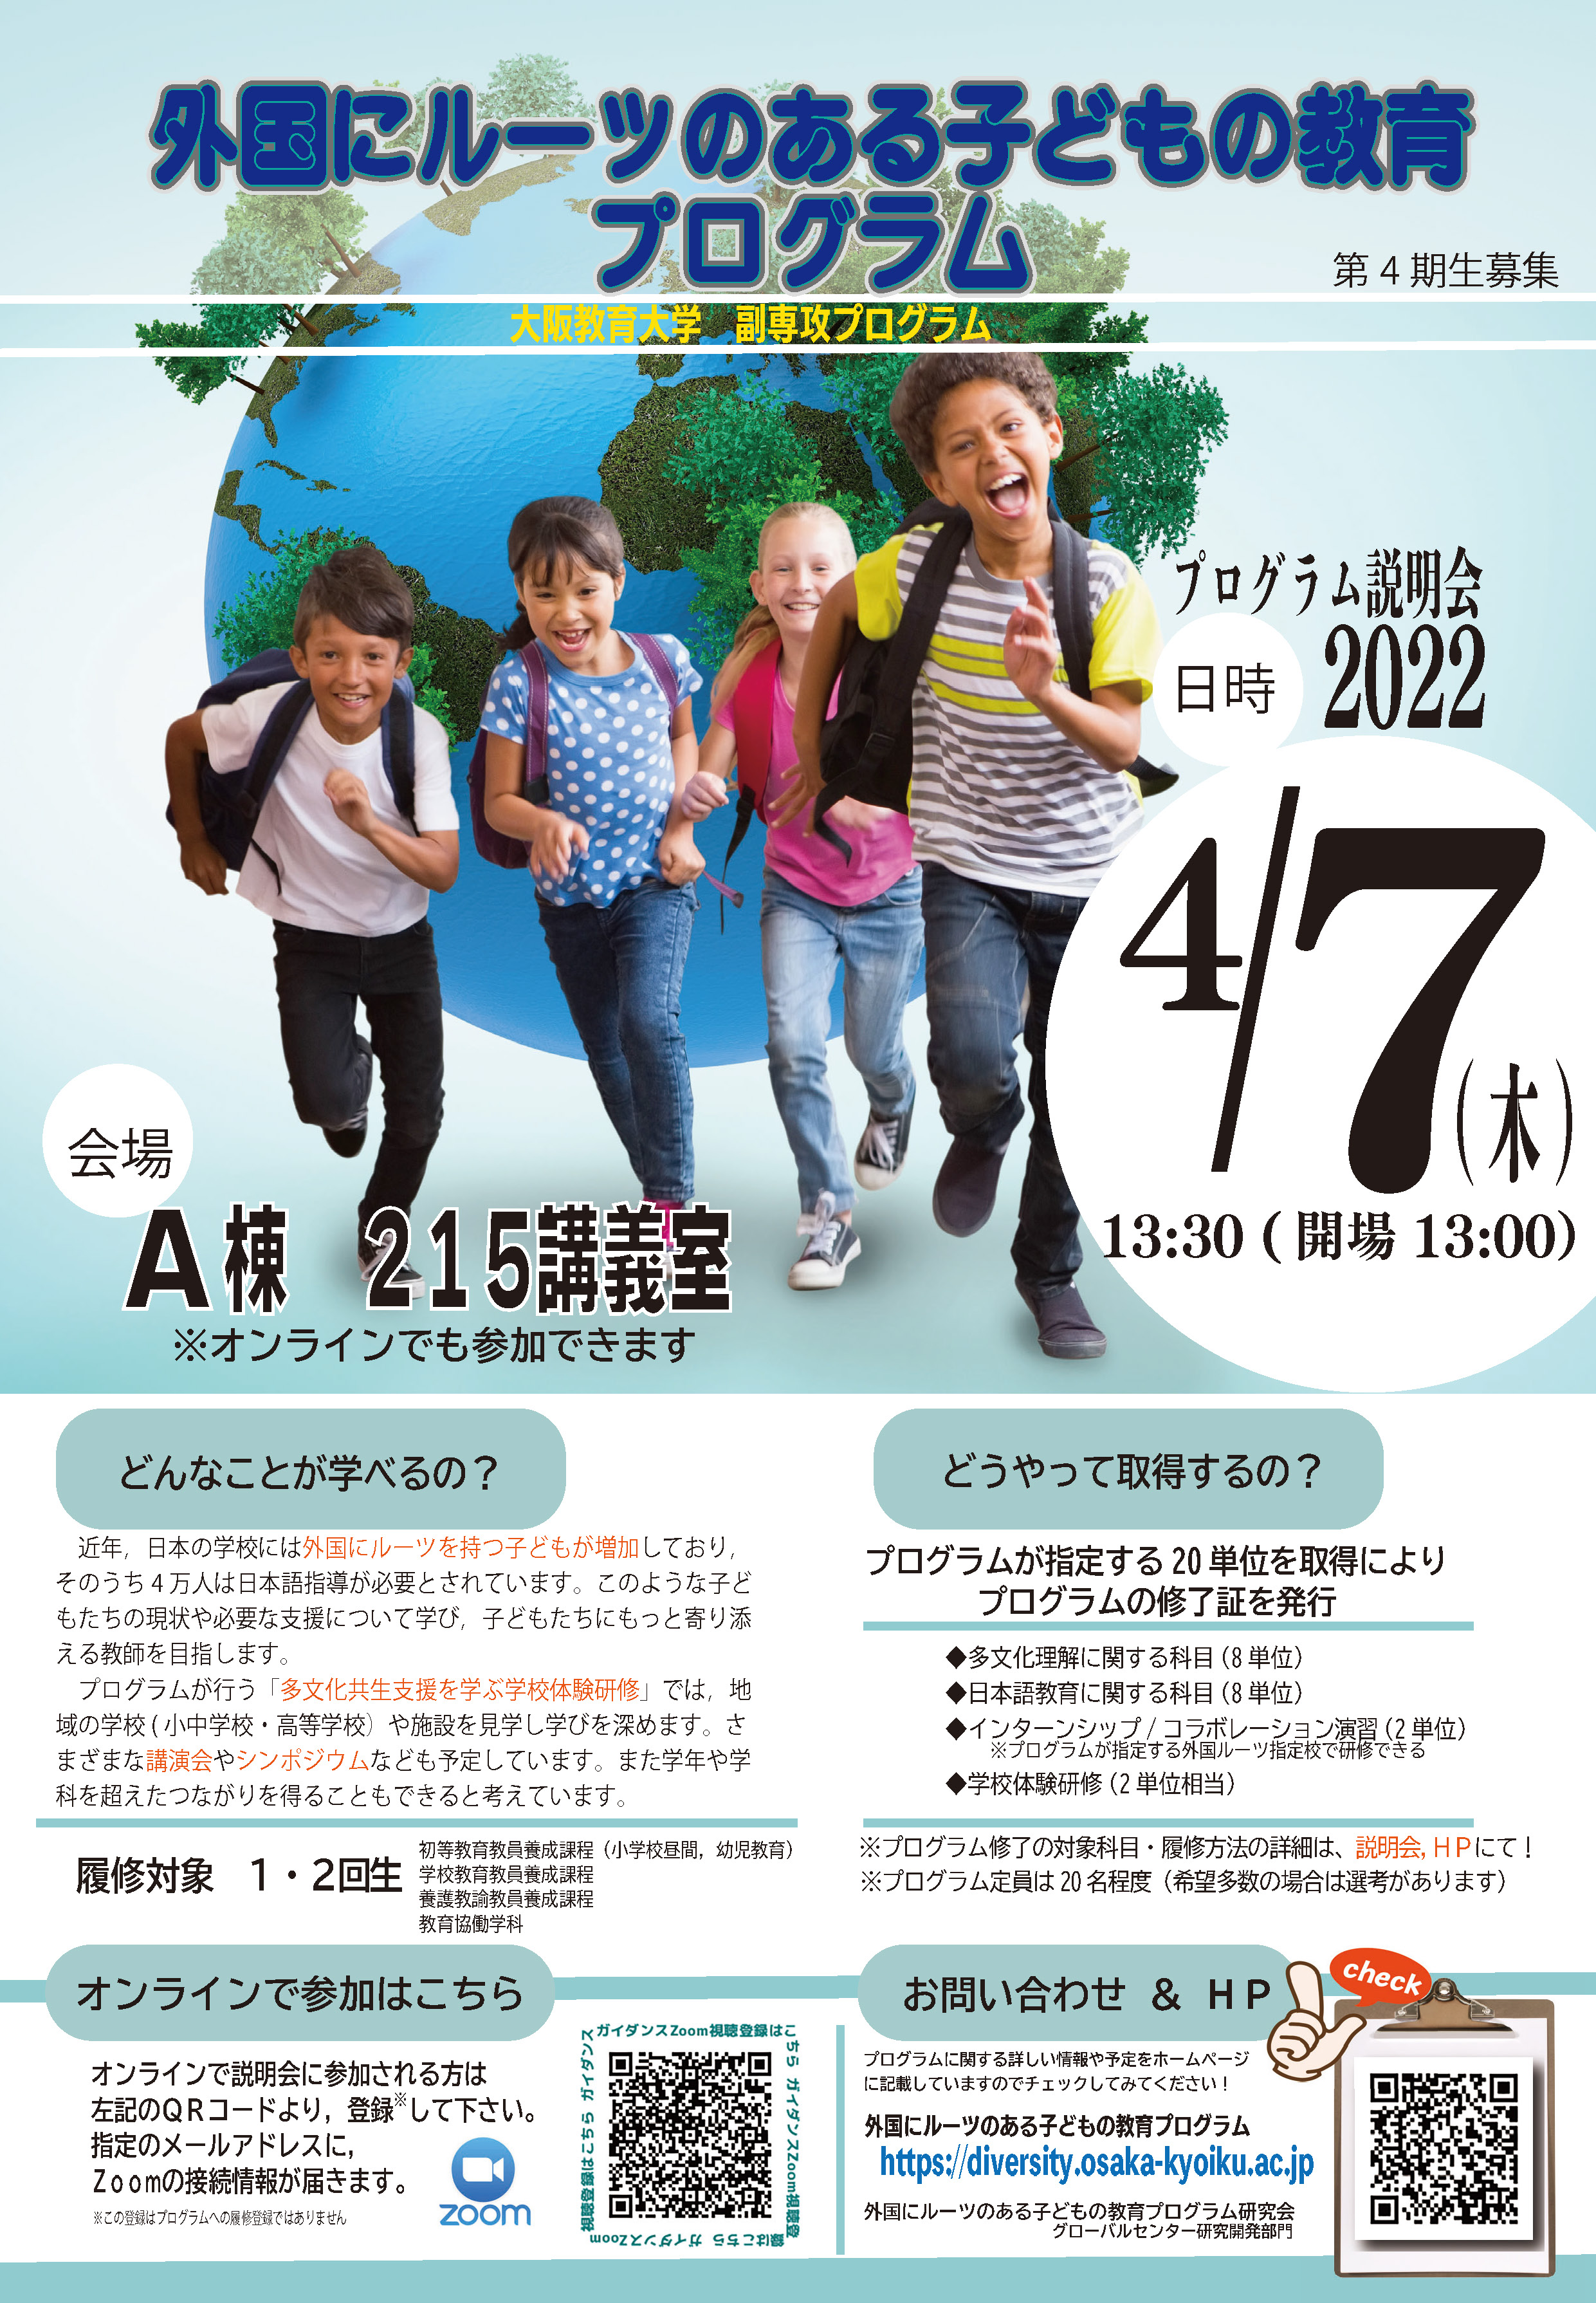 「外国にルーツのある子どもの教育」 　プログラム説明会を行います。 4月7日13時30分から開催。詳しくはこちらをご覧ください。 